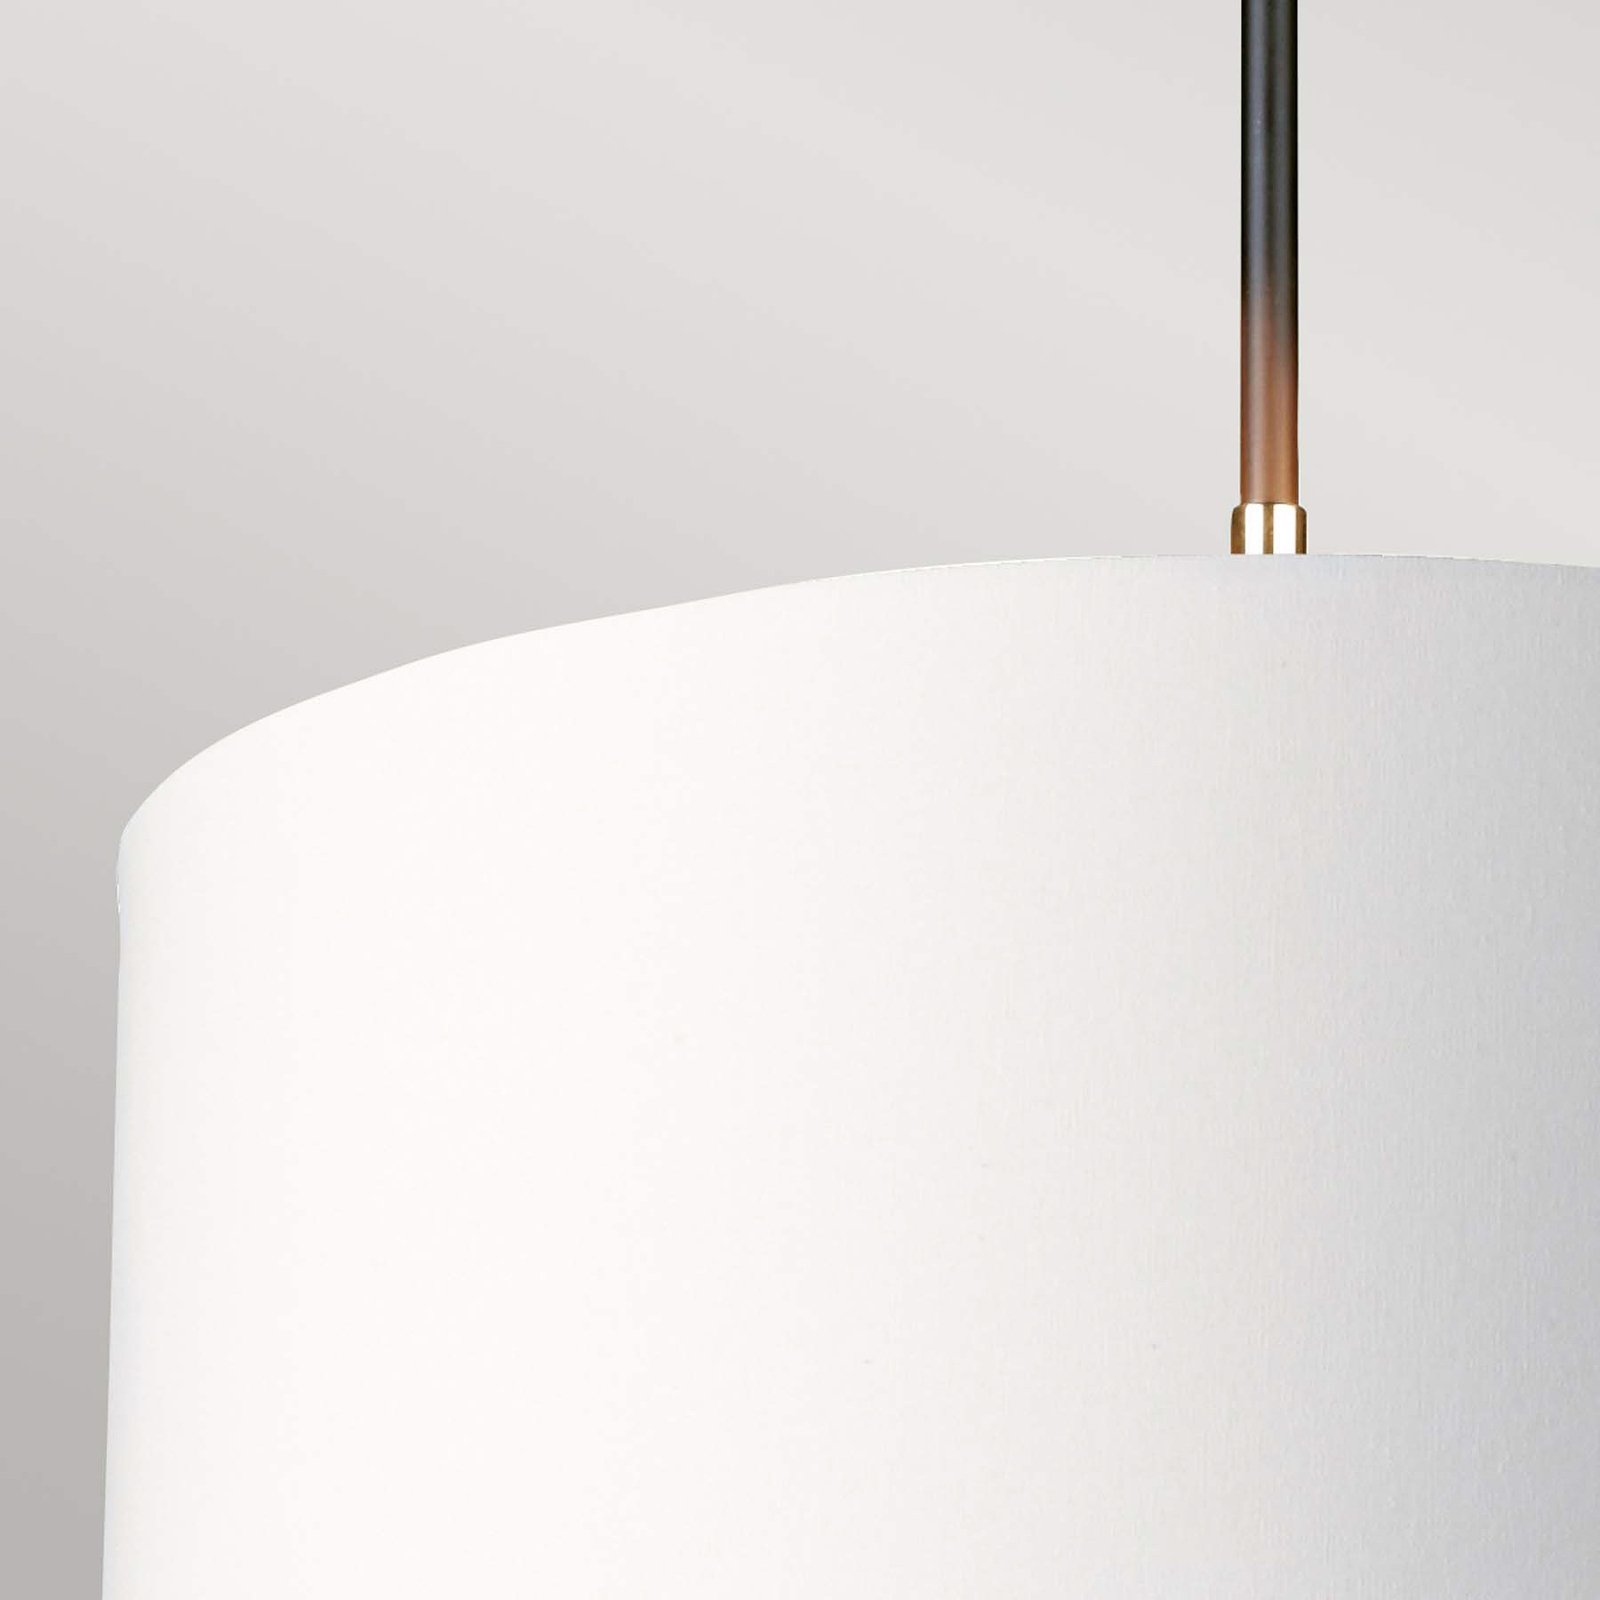 Ledvance Orbis Dublin LED-Deckenlampe silber 39cm